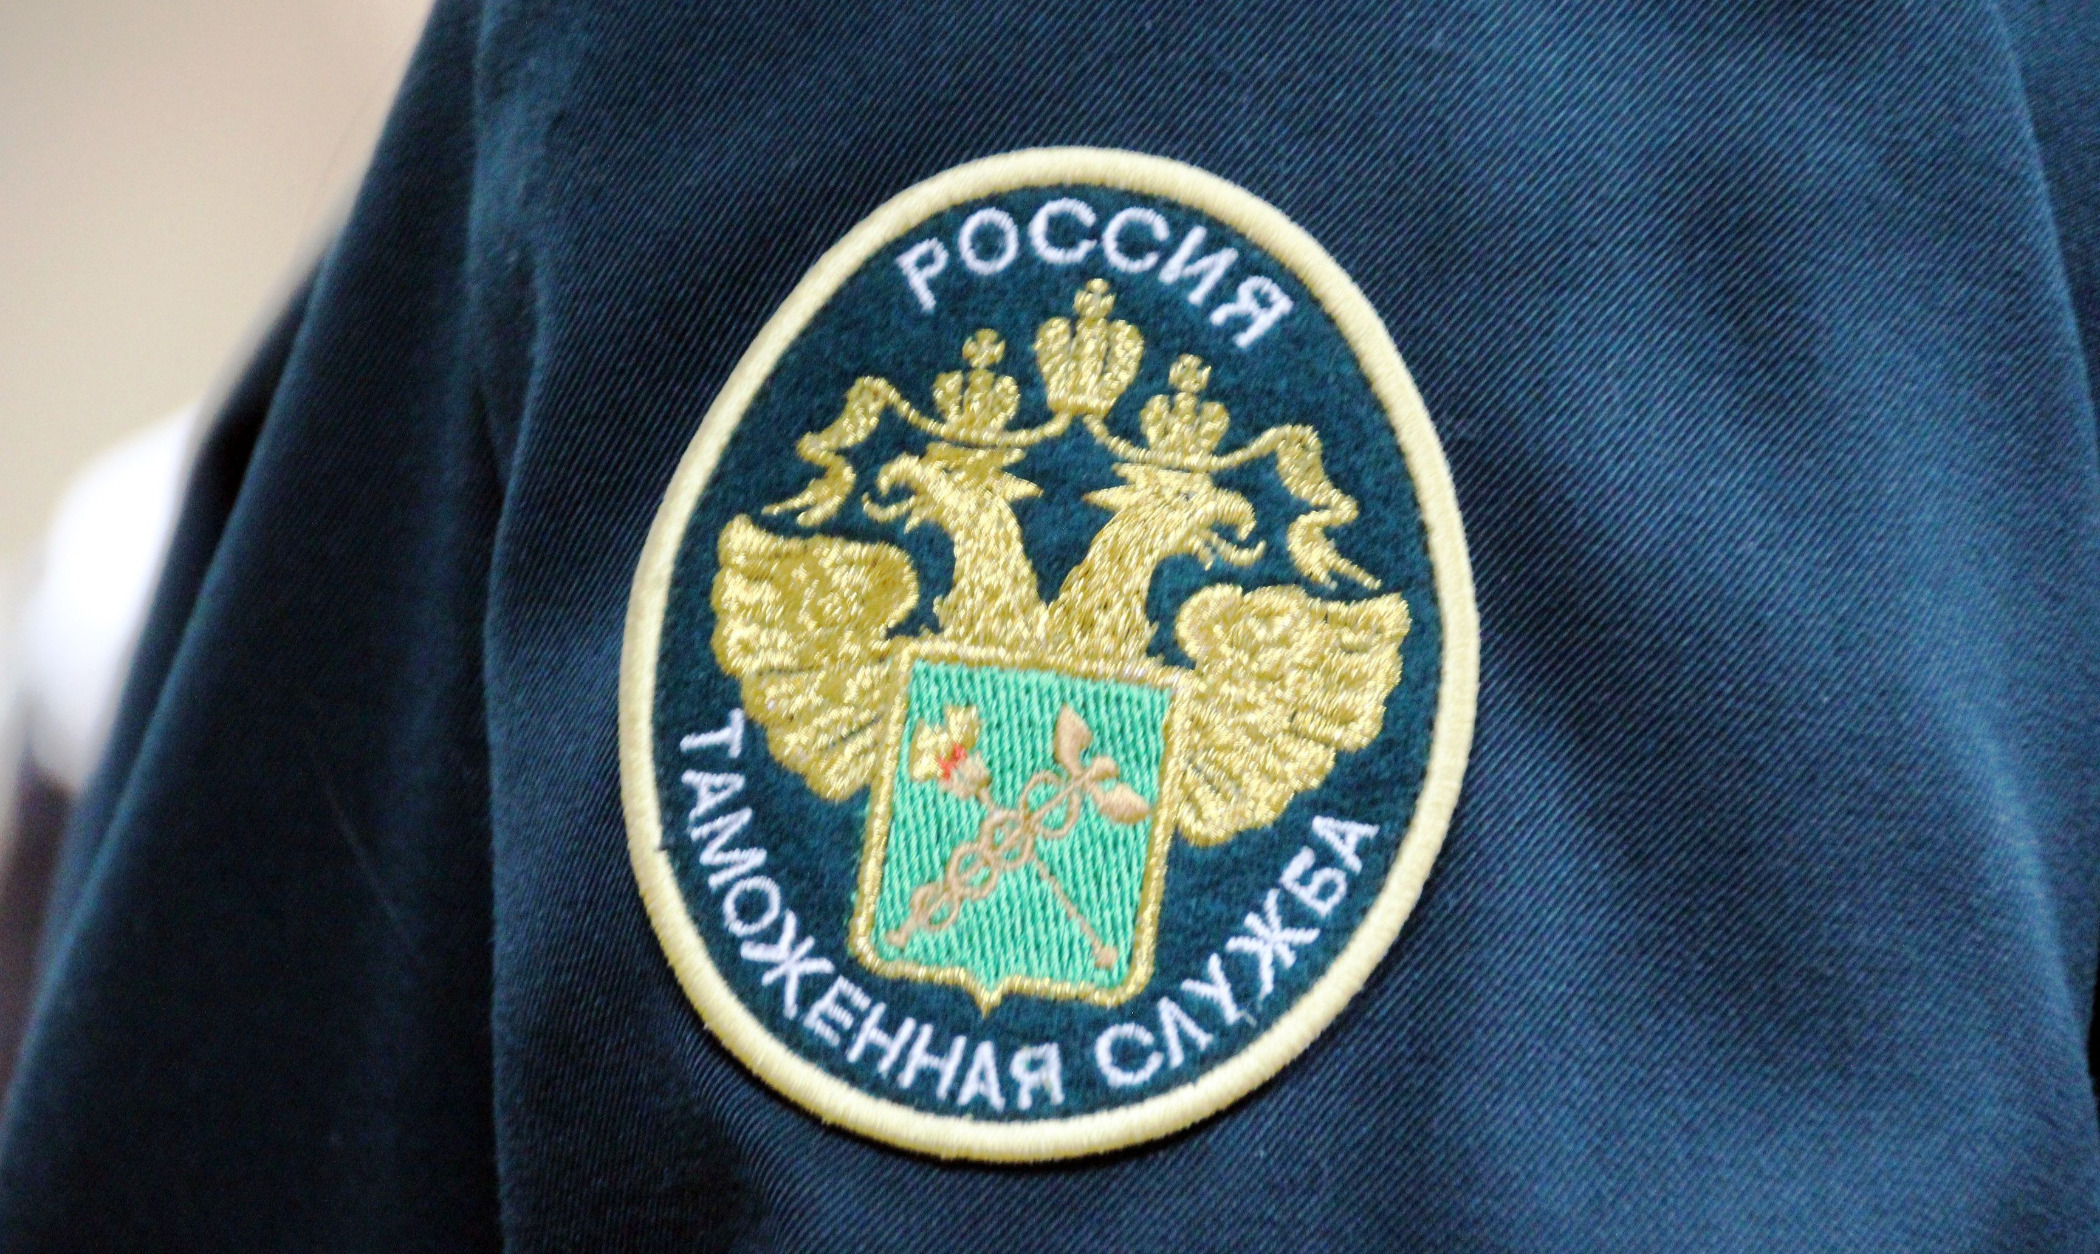 Российская таможенная академия — Владивостокский филиал